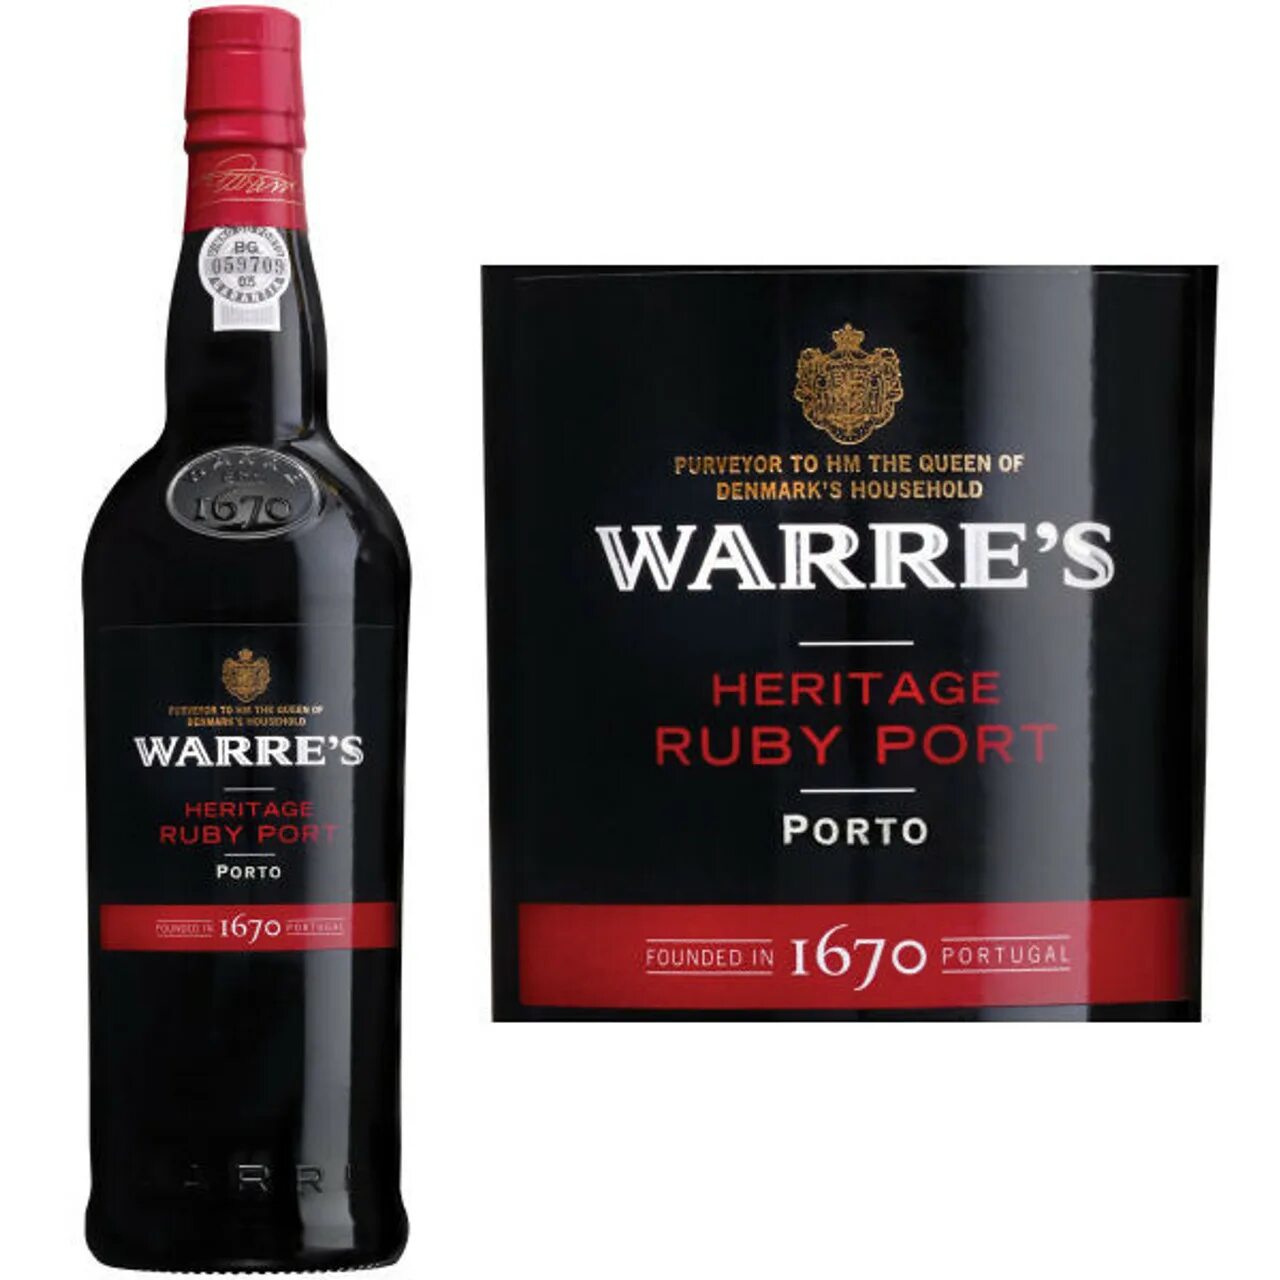 Руби порт. Портвейн португальский Warres Ruby Port. Портвейн Warre's Heritage Ruby. Порто Warre's Heritage Ruby Port. Портвейн Tawny Warres.